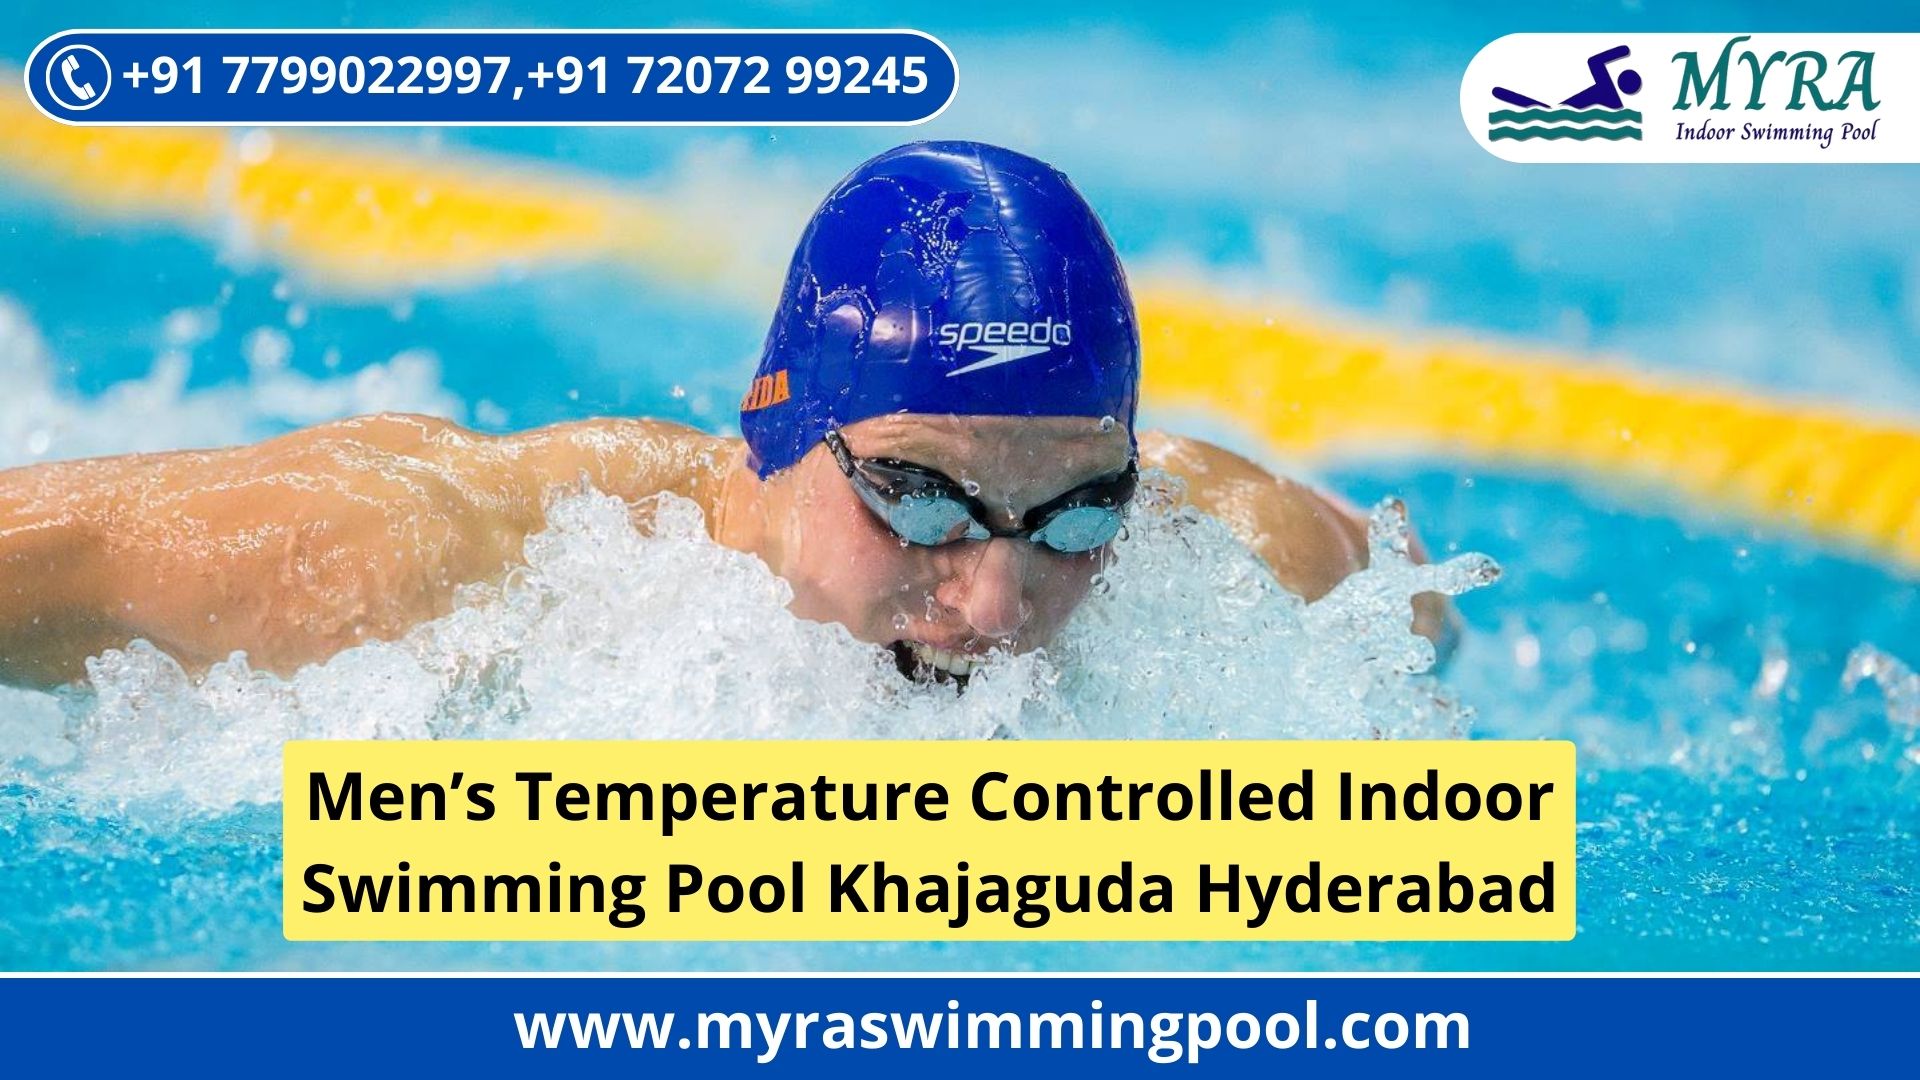 Men's Temperature Controlled Indoor Swimming Pool in Khajaguda